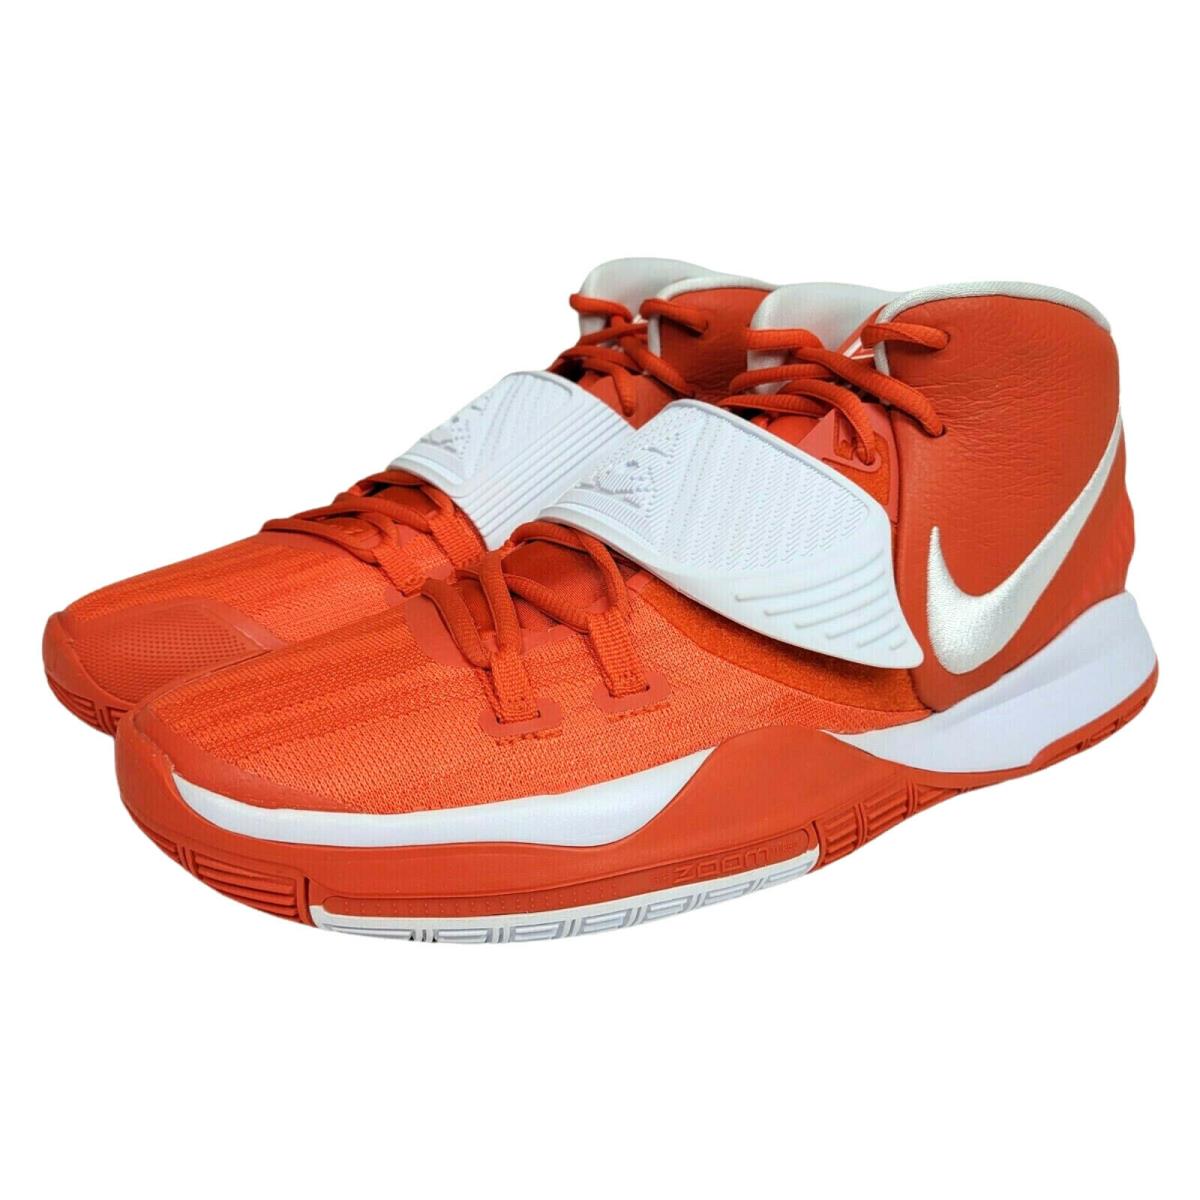 Nike shoes Kyrie - Orange 2